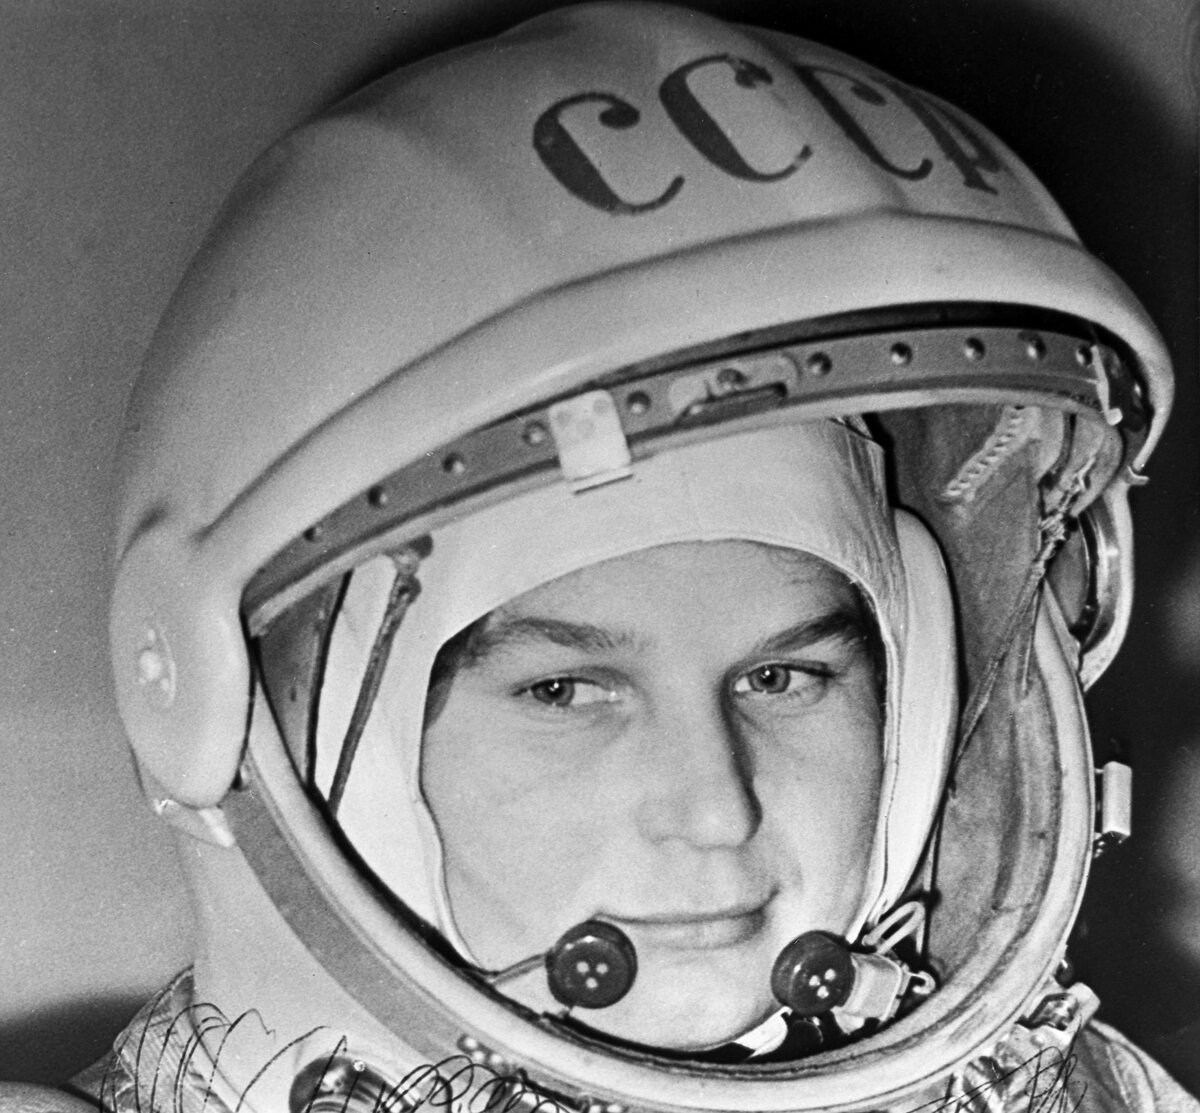 16 июня первая женщина космонавт 1963. Терешкова космонавт.